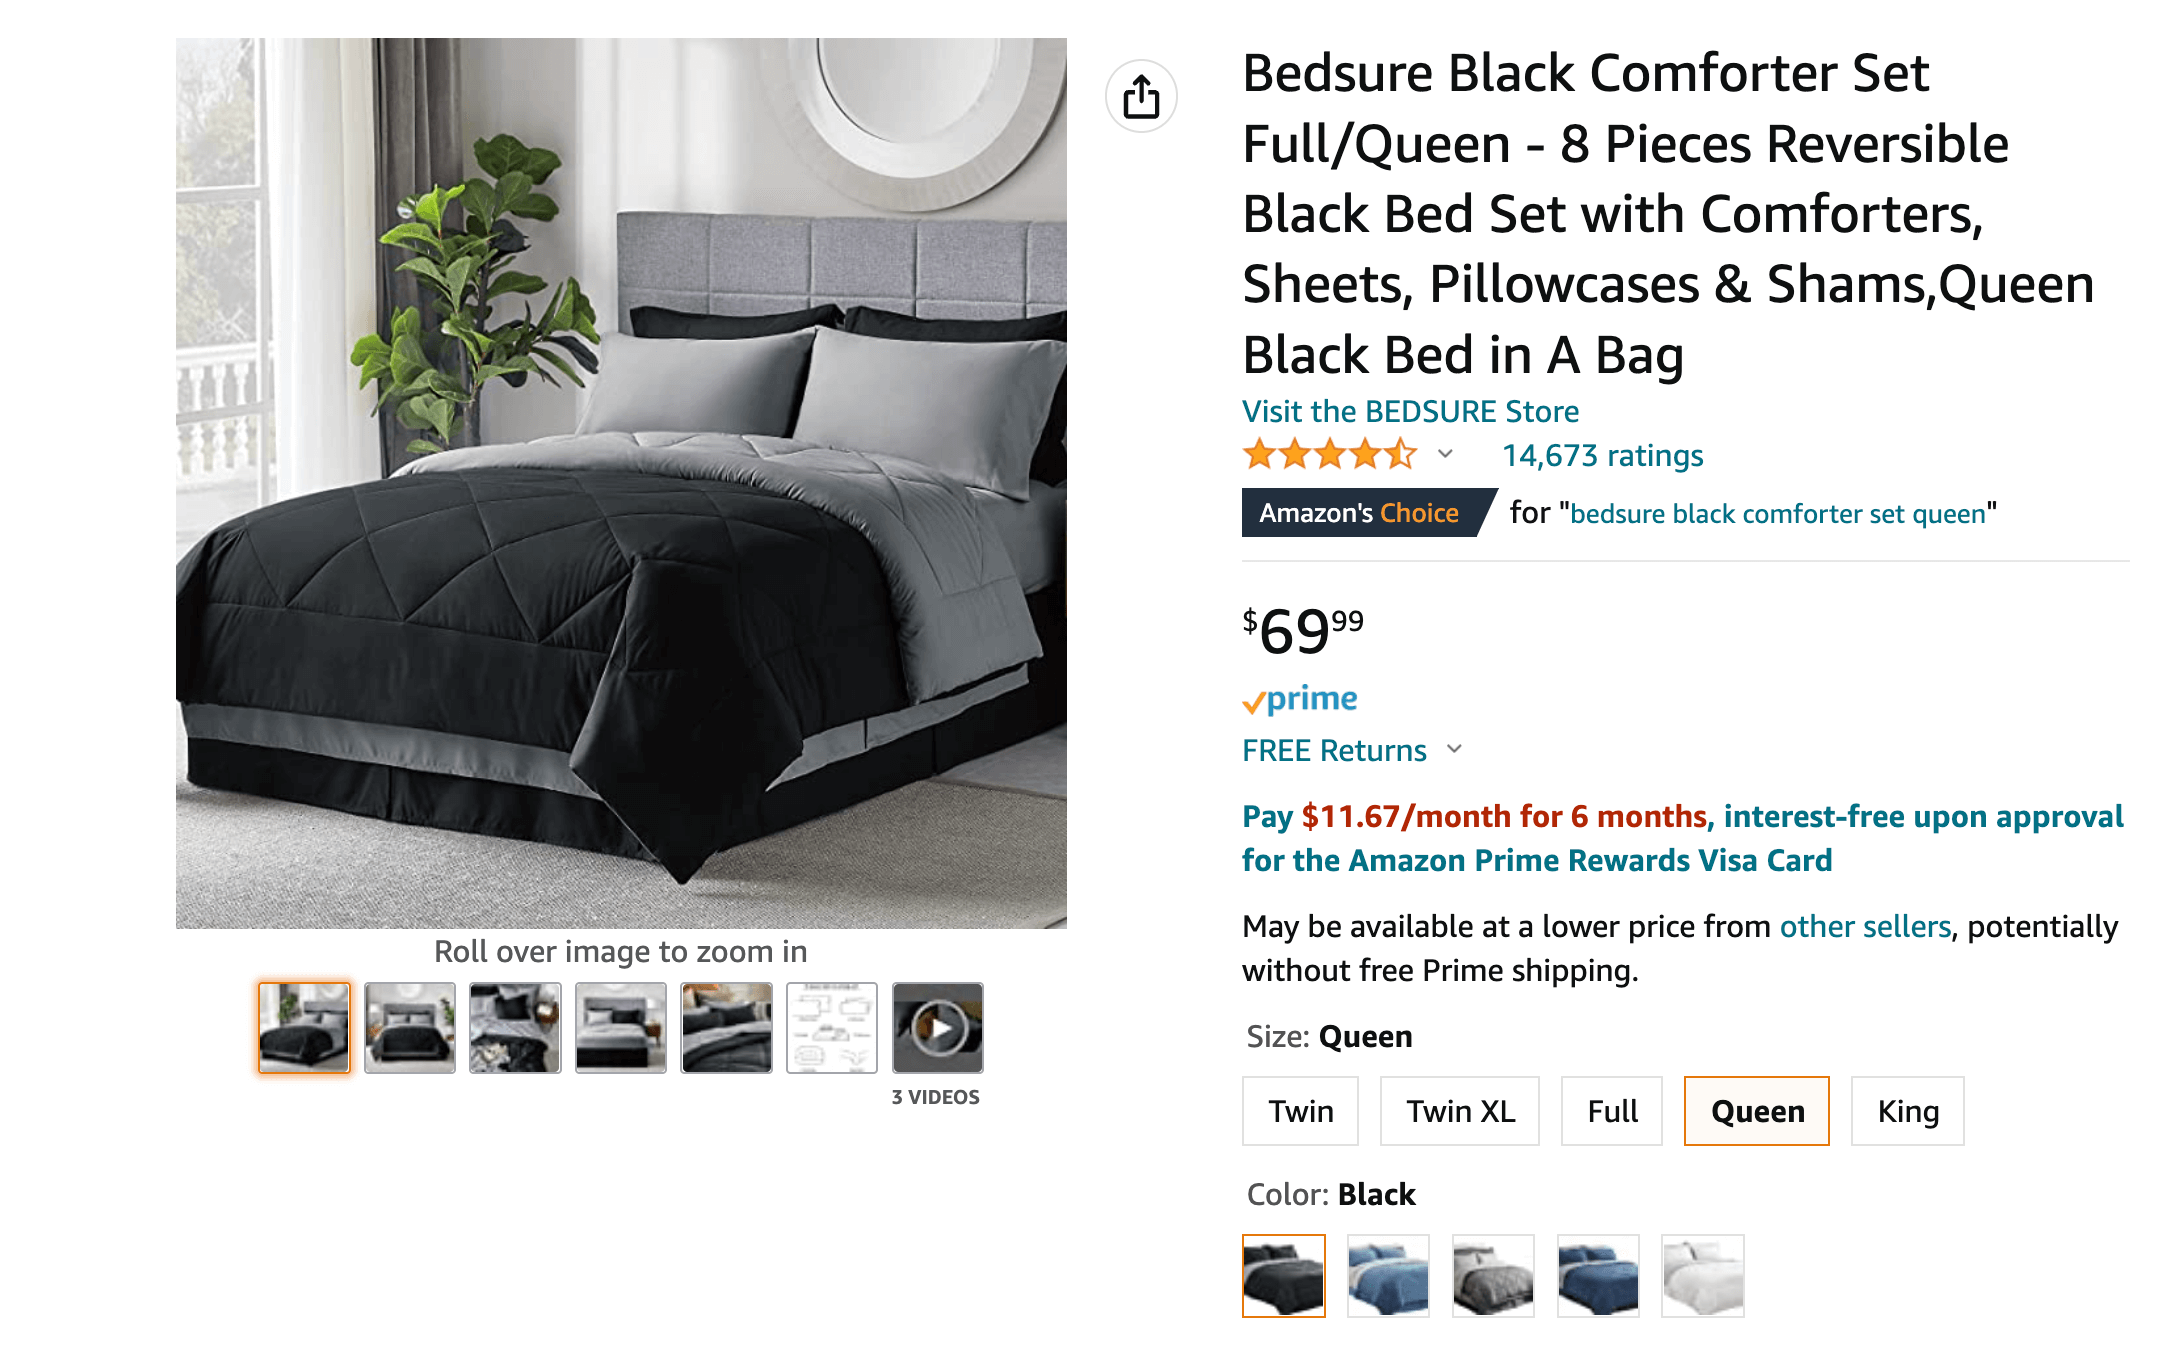 Bedsure Comforter and Bedding Set, Amazon listing